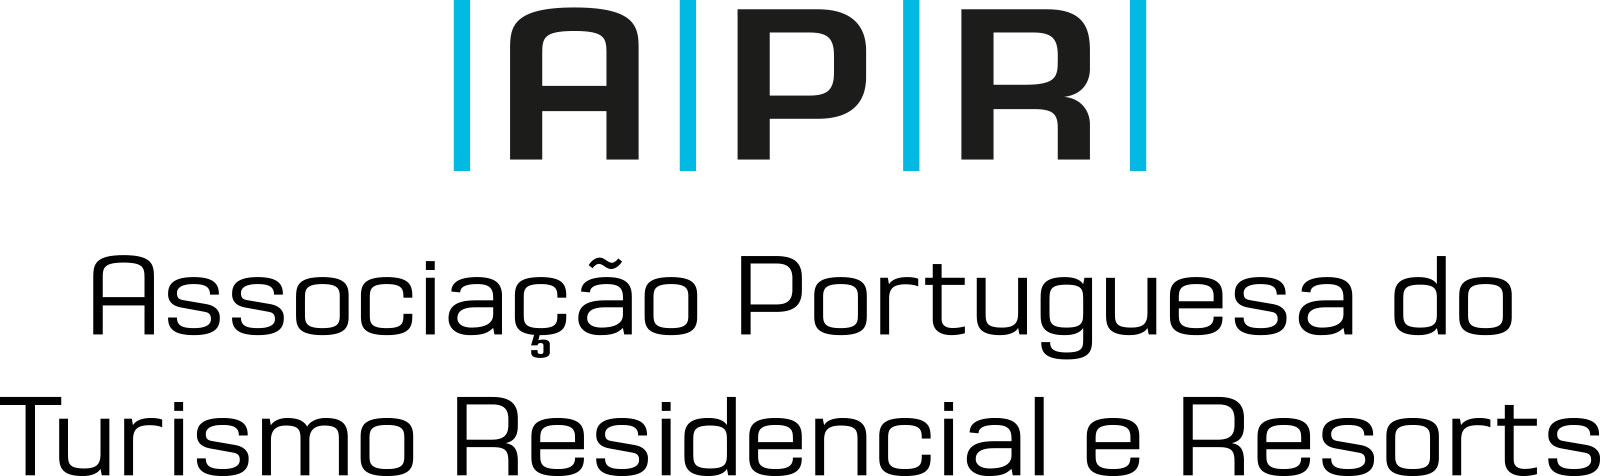 APR-Associação Portuguesa doTurismo Residencial e Resorts